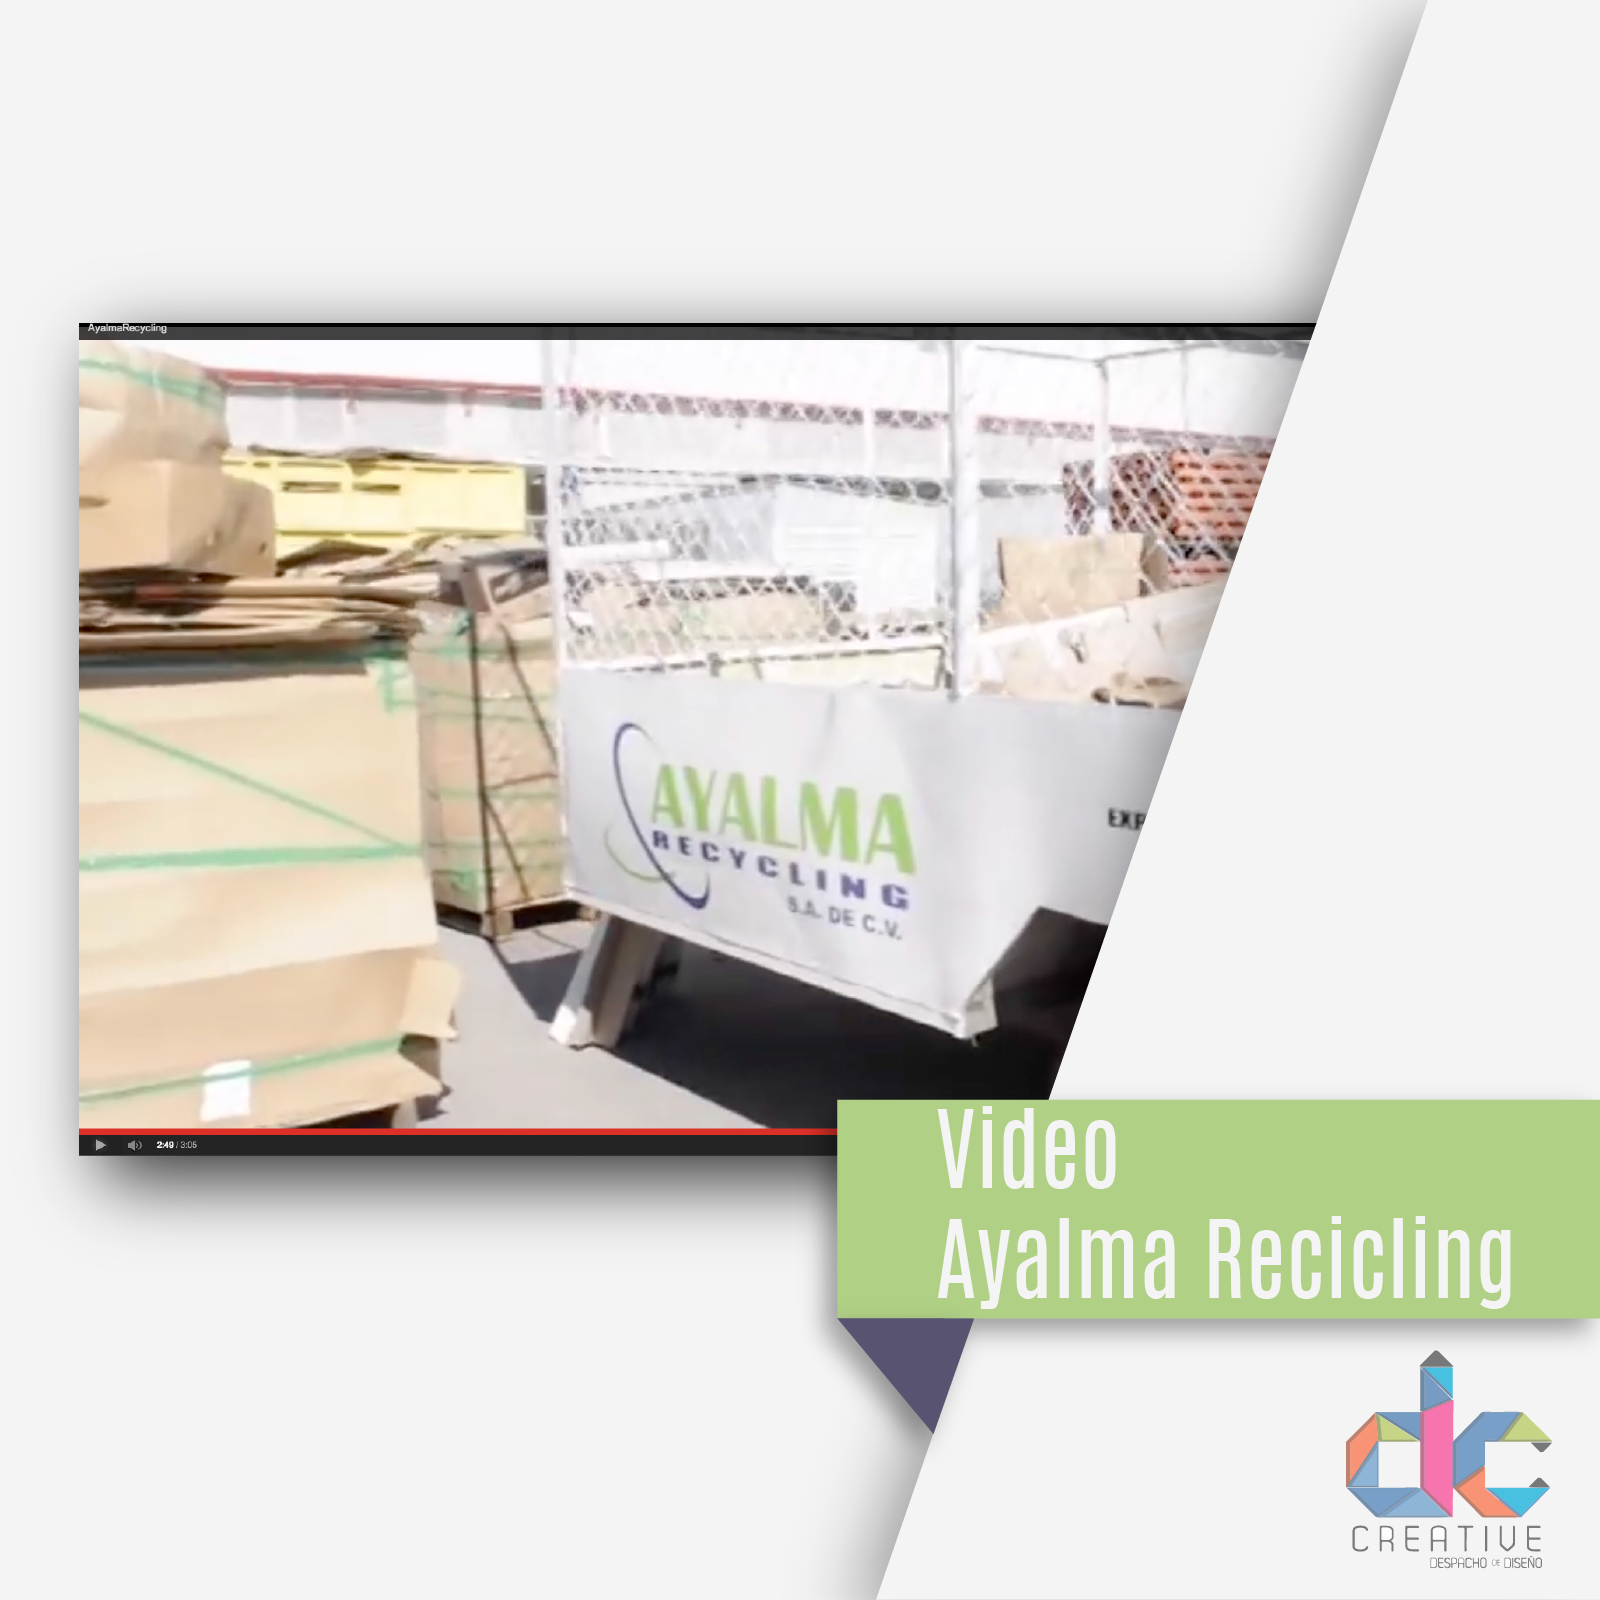 Creacion de video corporativo para Ayalma Recycling